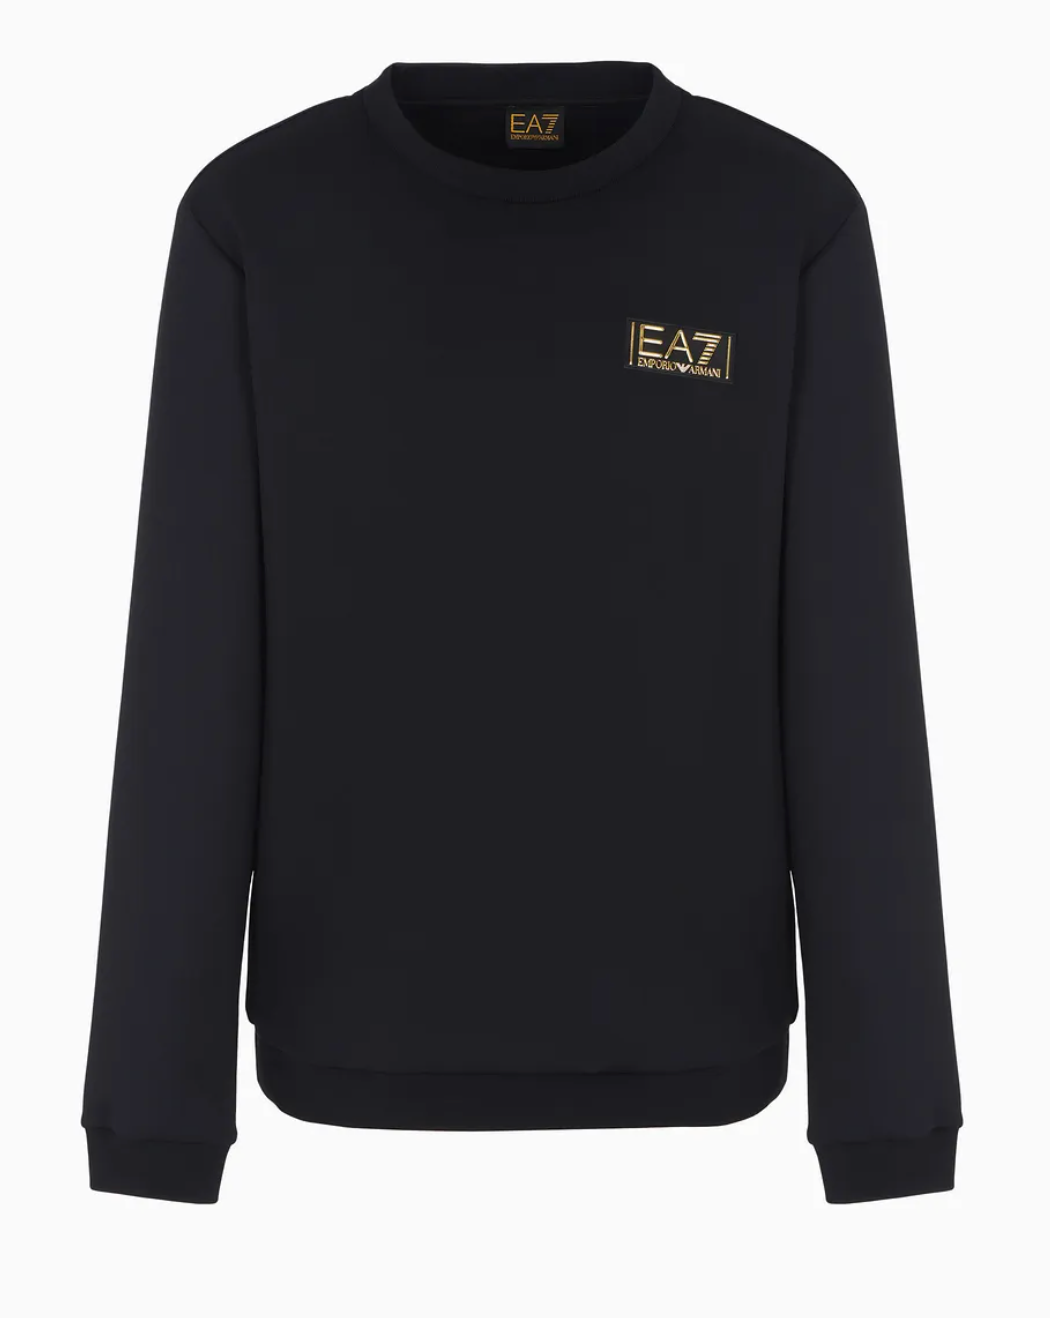 EA7 By Emporio Armani Gold Label Sweatshirt Black